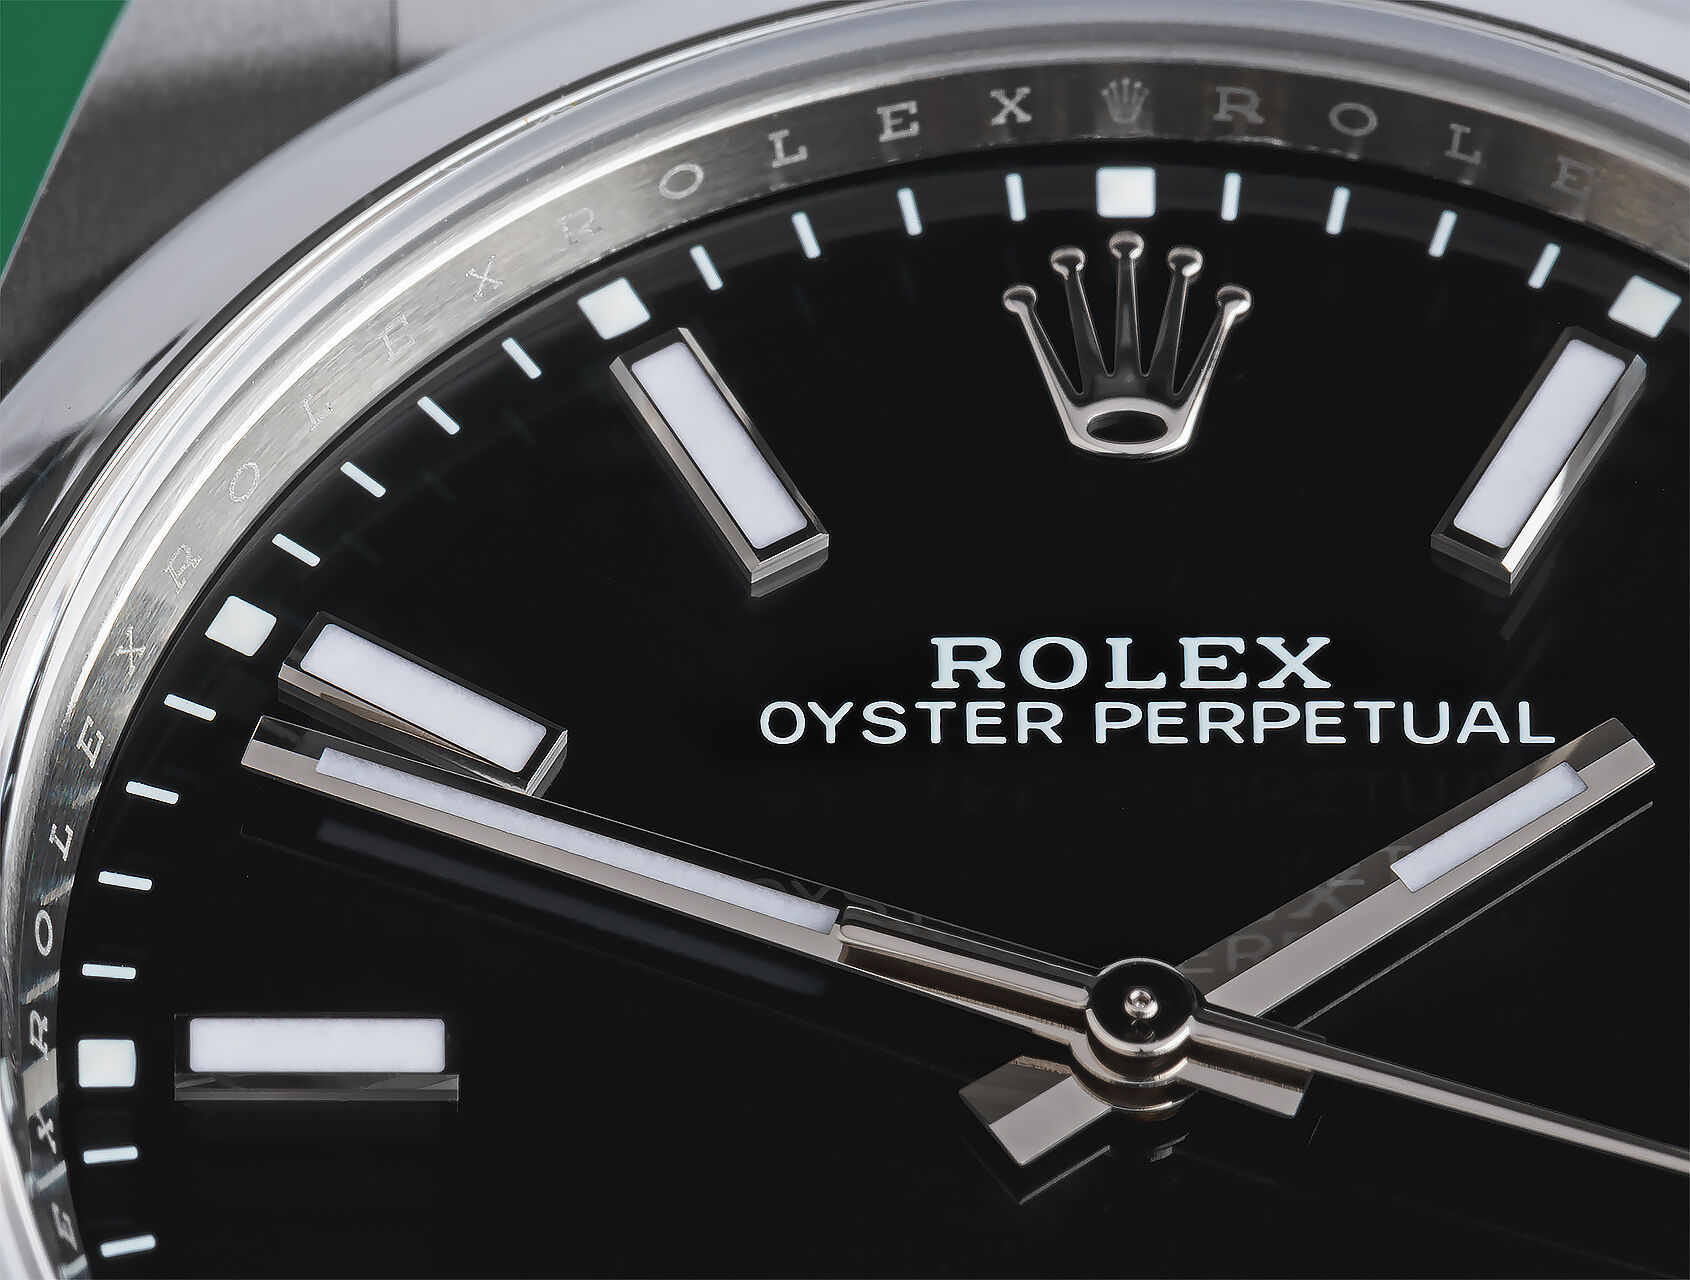 ref 114300 | 114300 - Box & Certificate | Rolex Oyster Perpetual